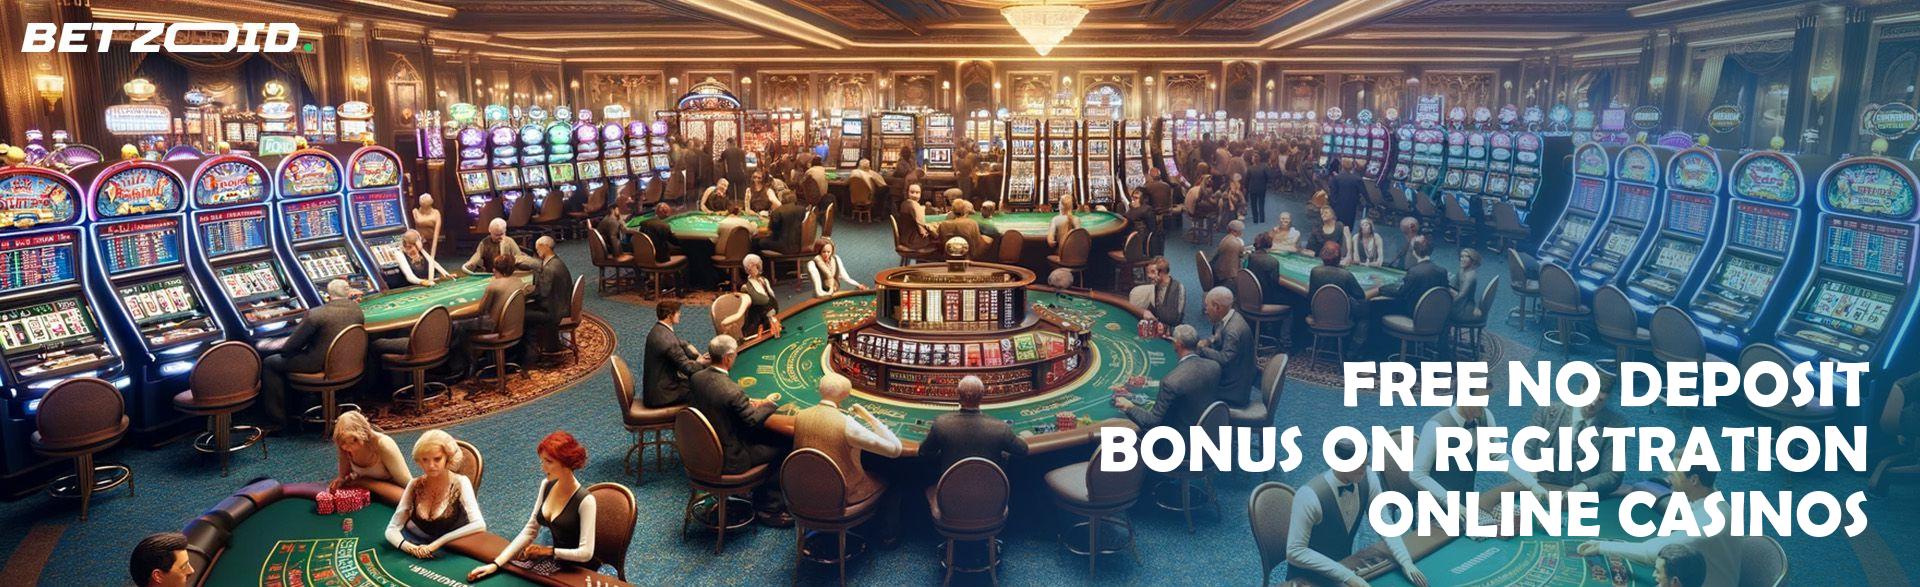 Free No Deposit Bonus On Registration Online Casinos.